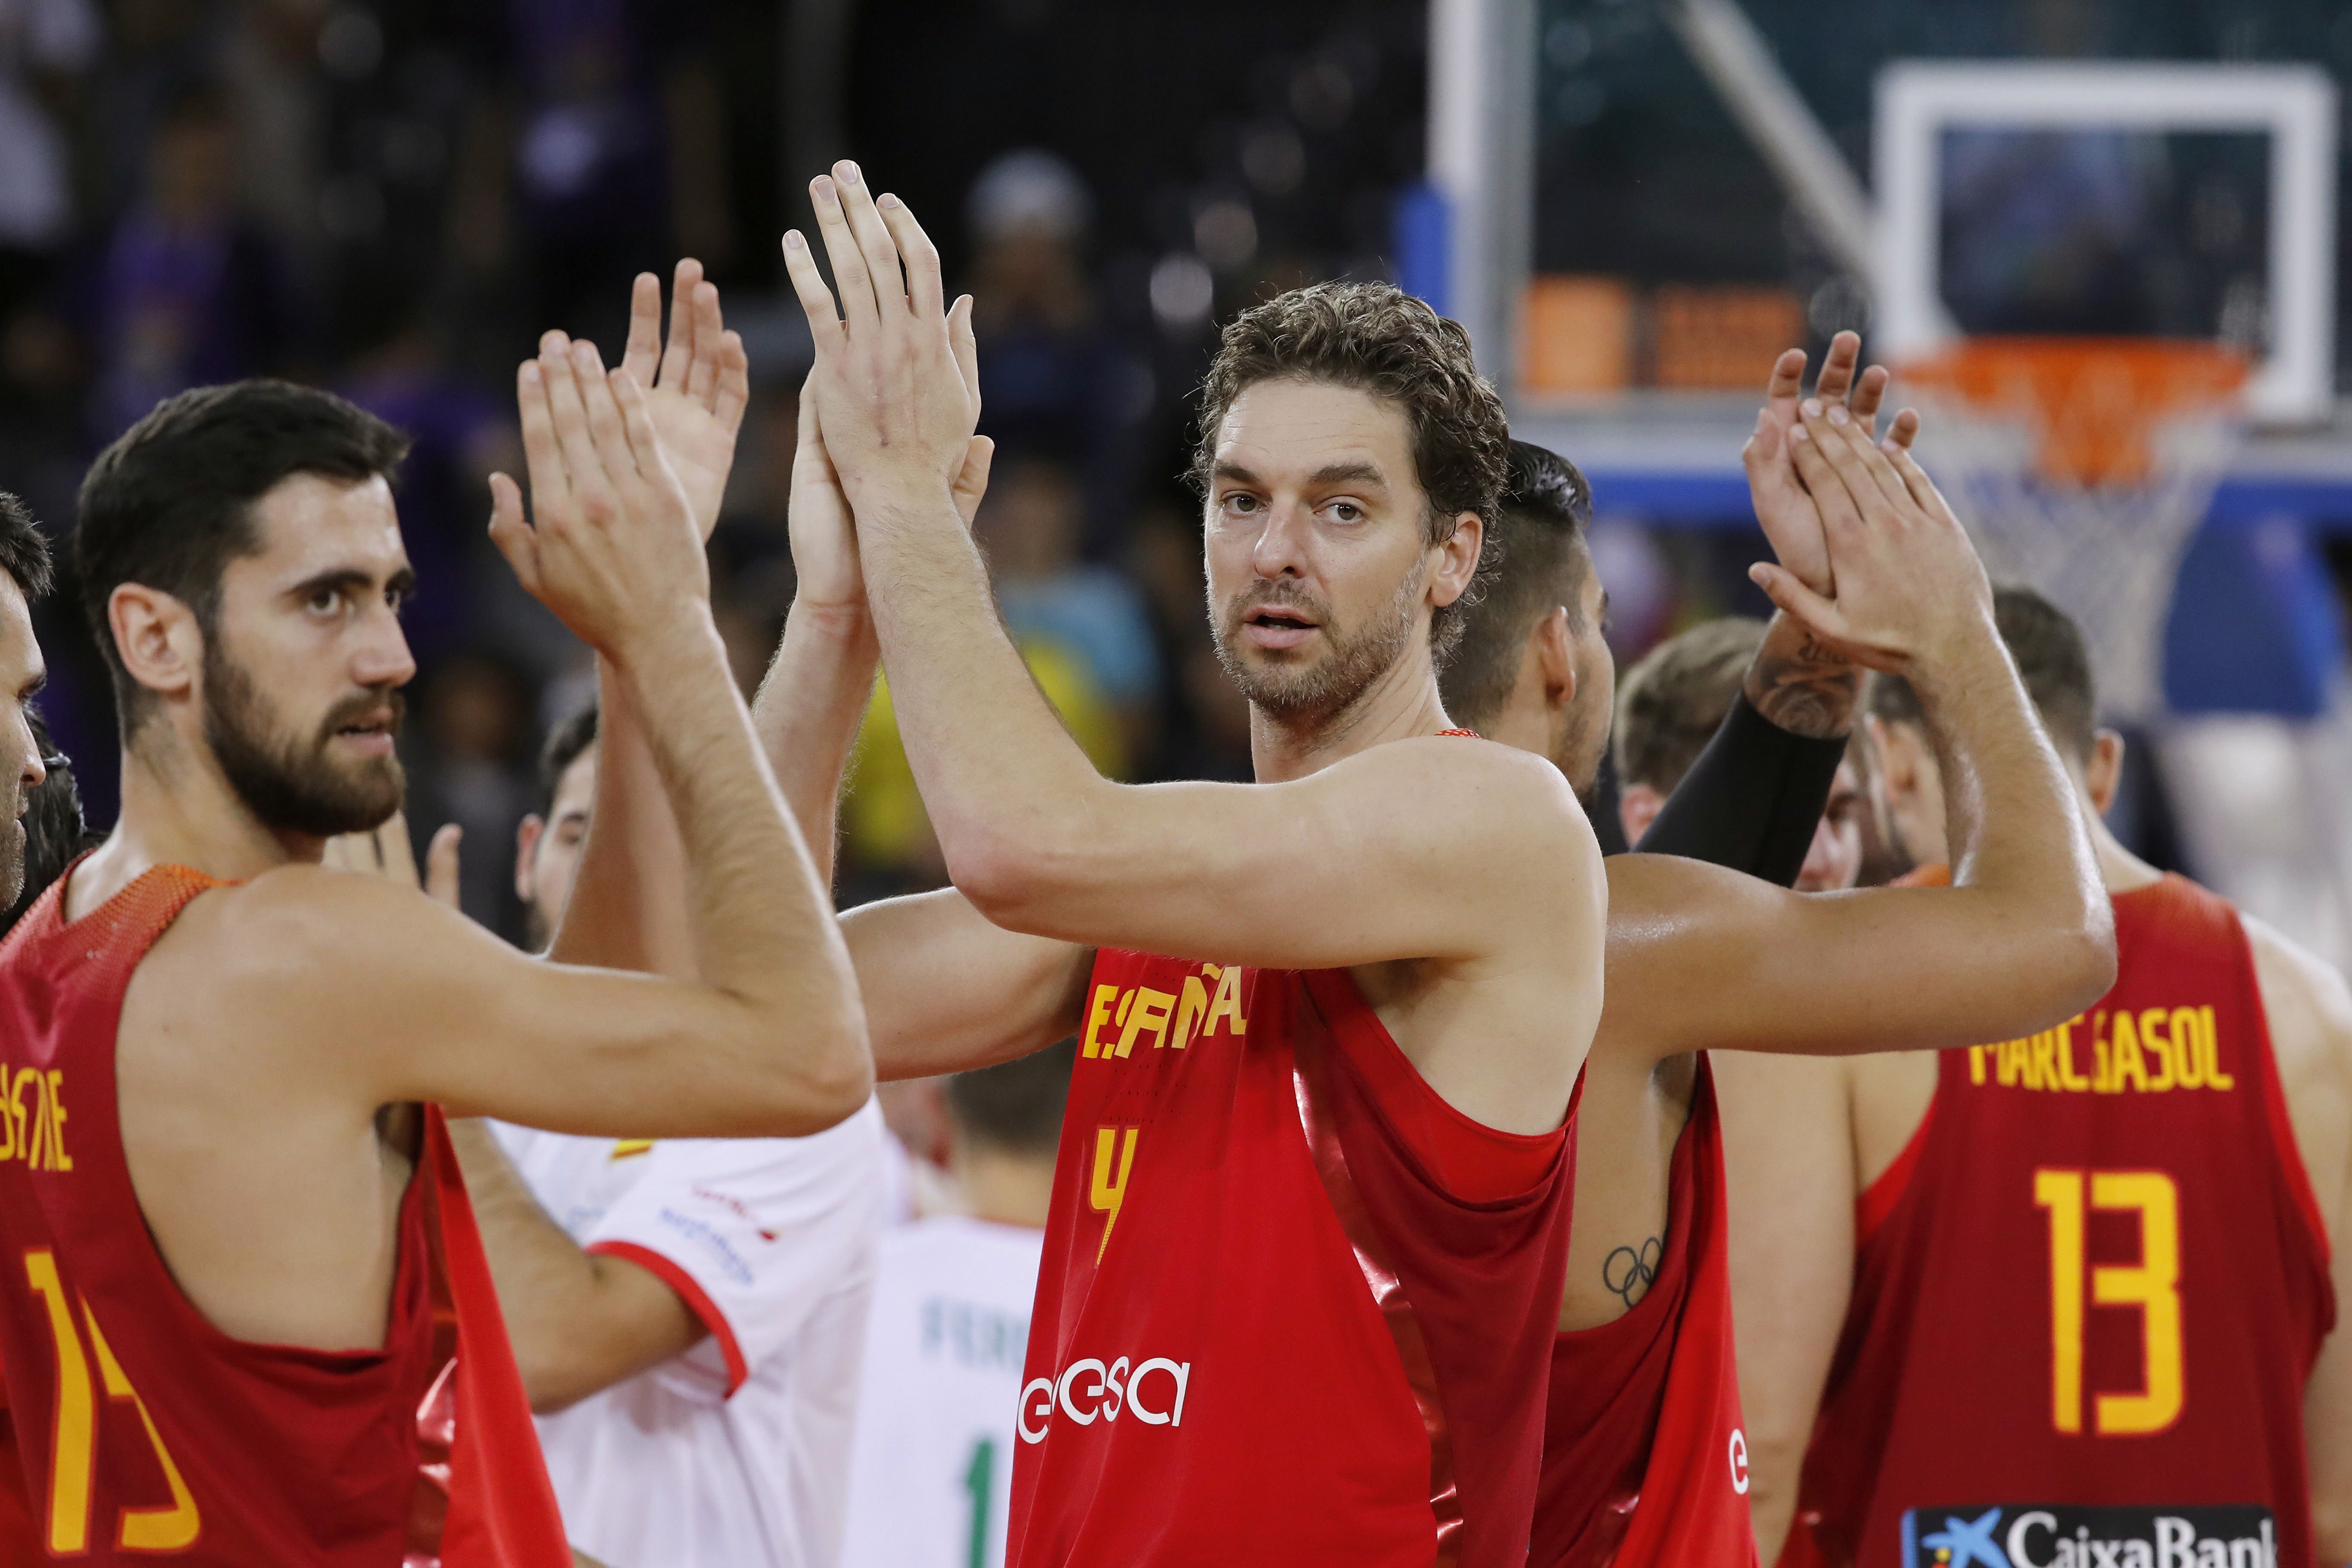 Espanya passa invicta a vuitens i Pau Gasol fa història a l'Eurobasket (64-87)